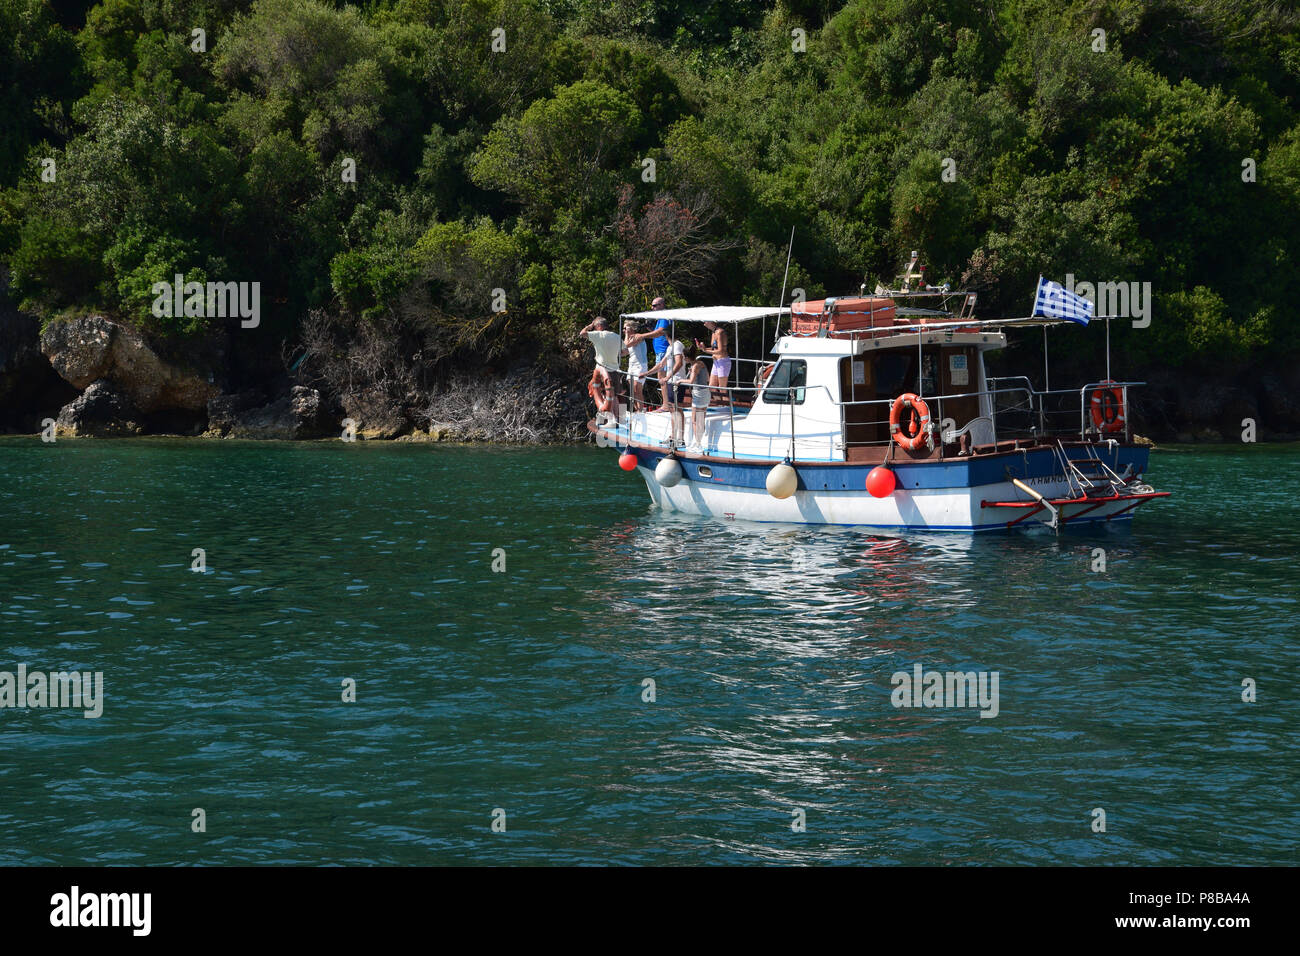 ZAKYNTHOS GREECE - luglio 5, 2015: le persone sulla barca da pesca hanno macchiato una caretta tartaruga di mare nuoto nei fondali bassi vicino alla spiaggia di Keri. Foto Stock